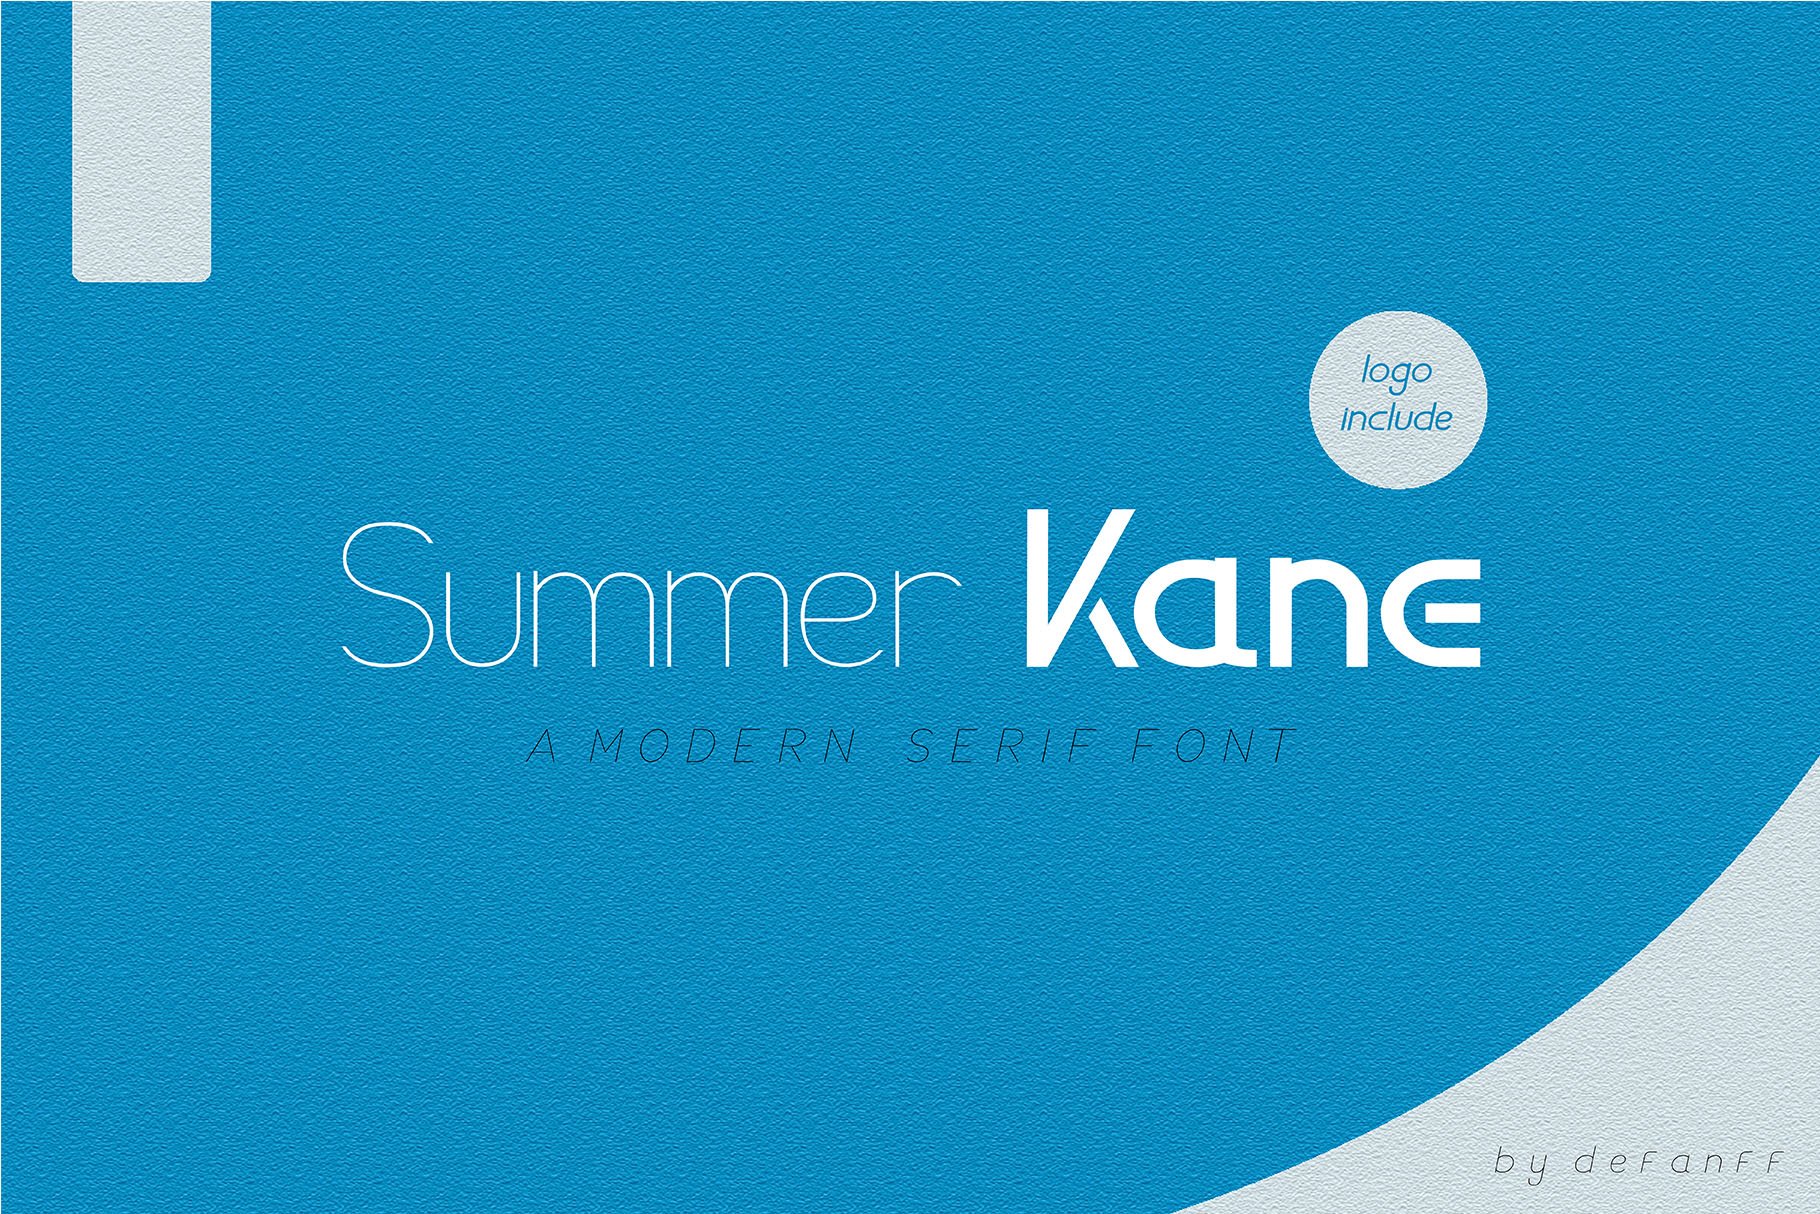 Summer Kane | Modern Serif Font cover image.